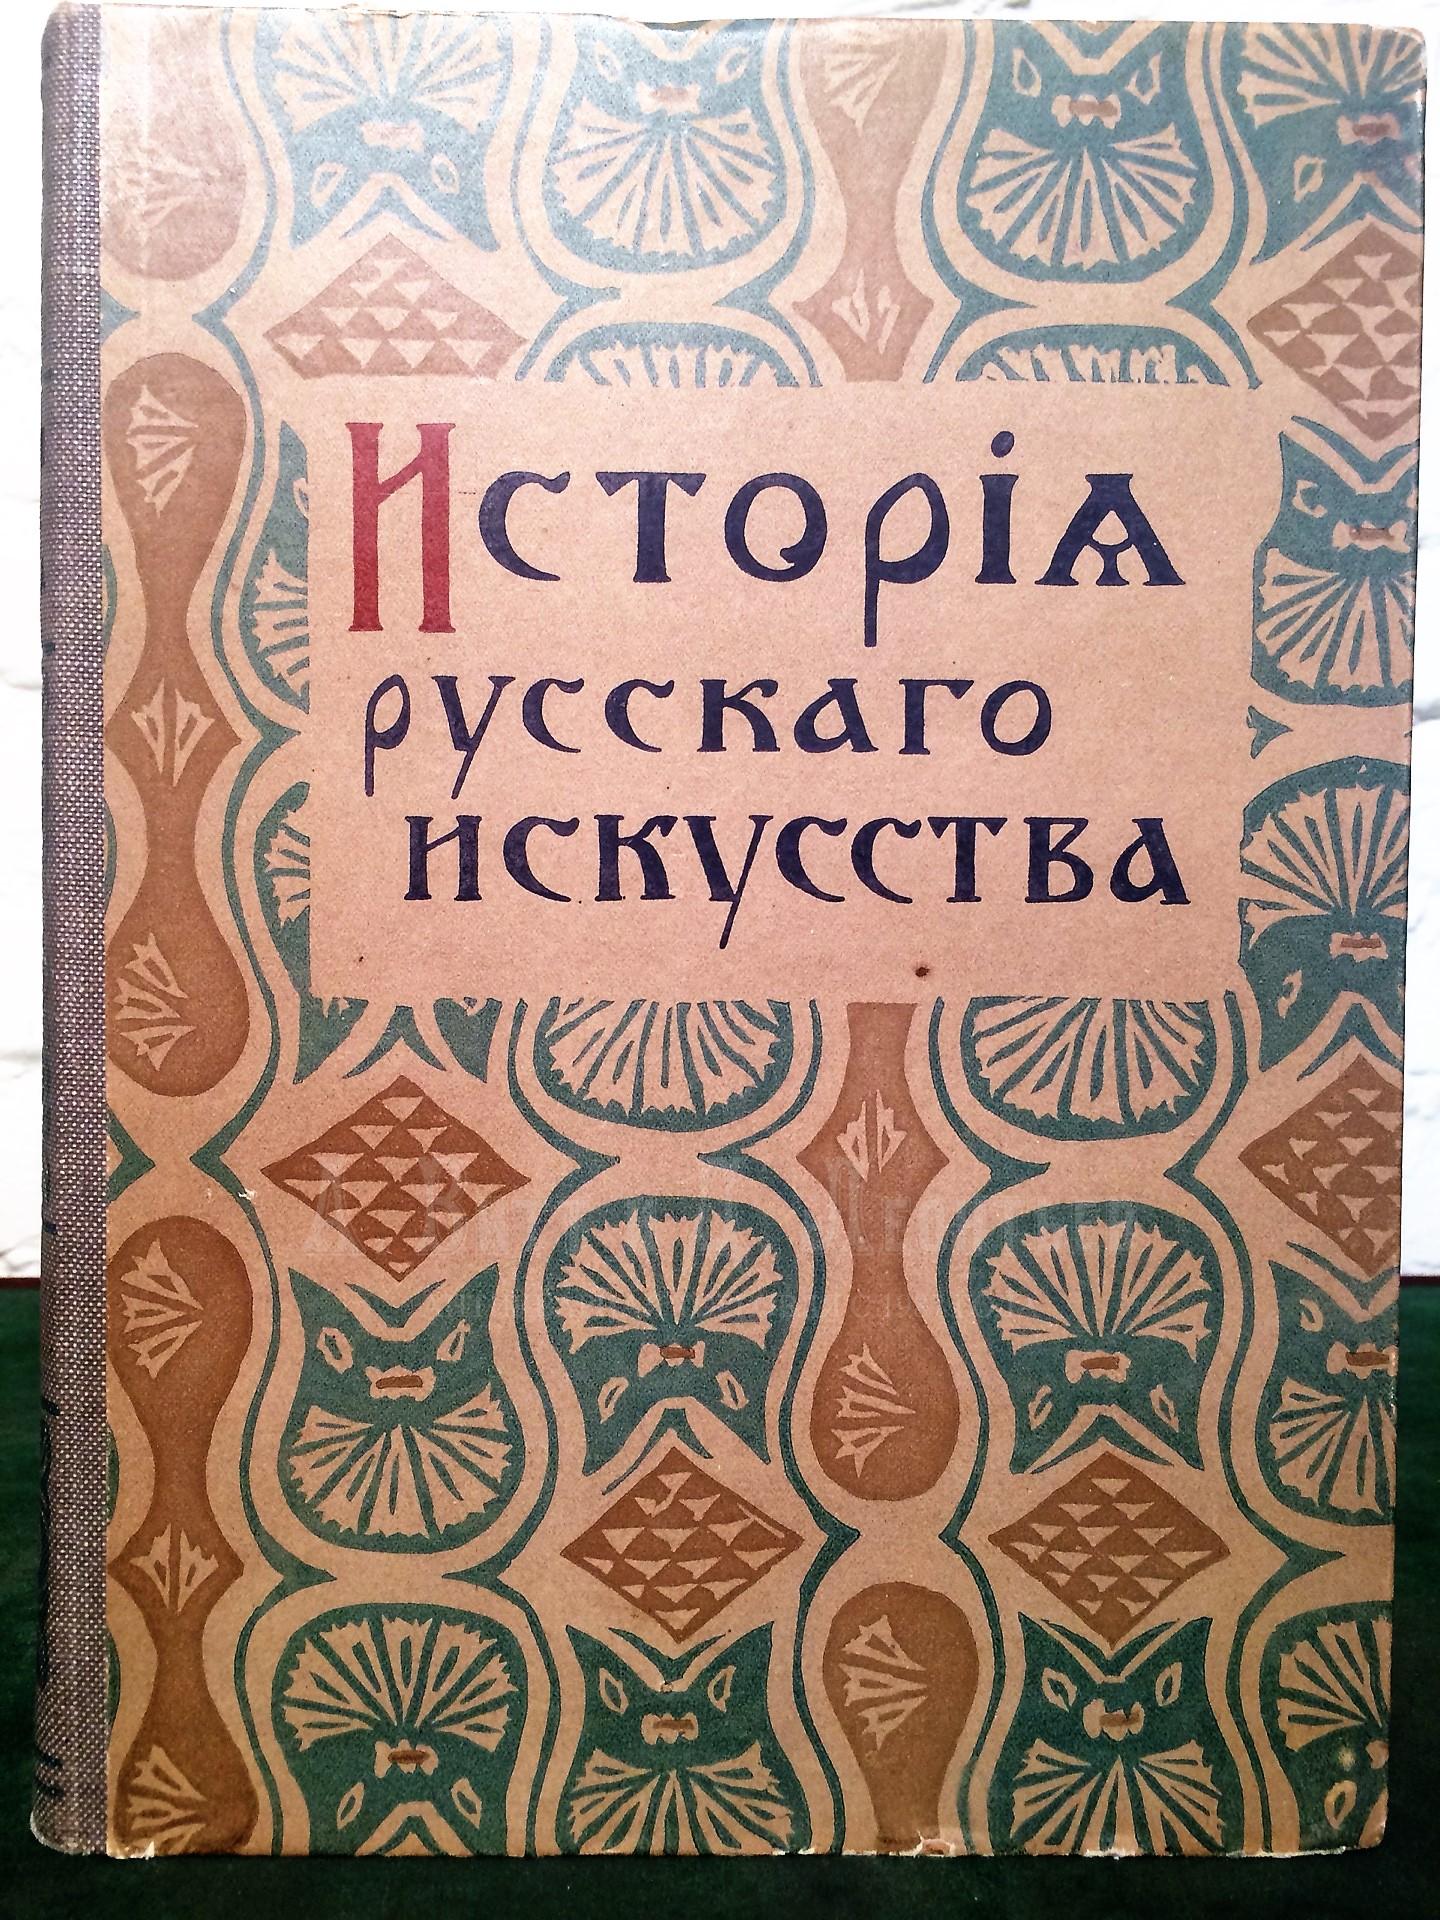 Виктор Никольский, История русского искусства